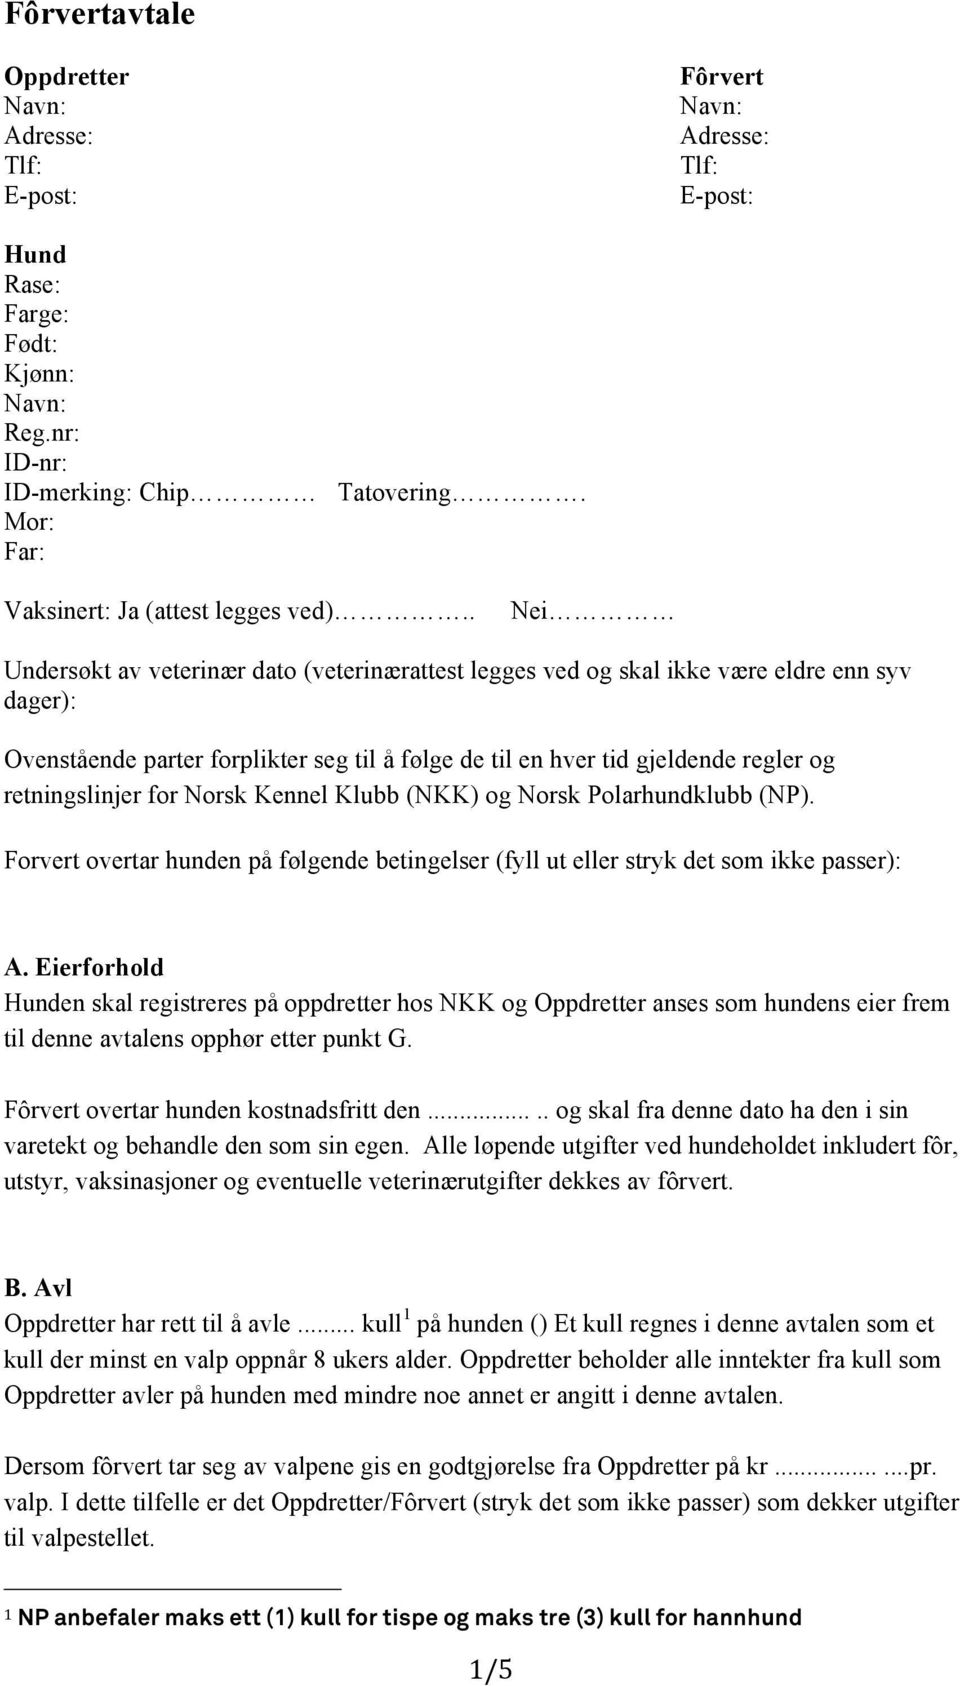 retningslinjer for Norsk Kennel Klubb (NKK) og Norsk Polarhundklubb (NP). Forvert overtar hunden på følgende betingelser (fyll ut eller stryk det som ikke passer): A.